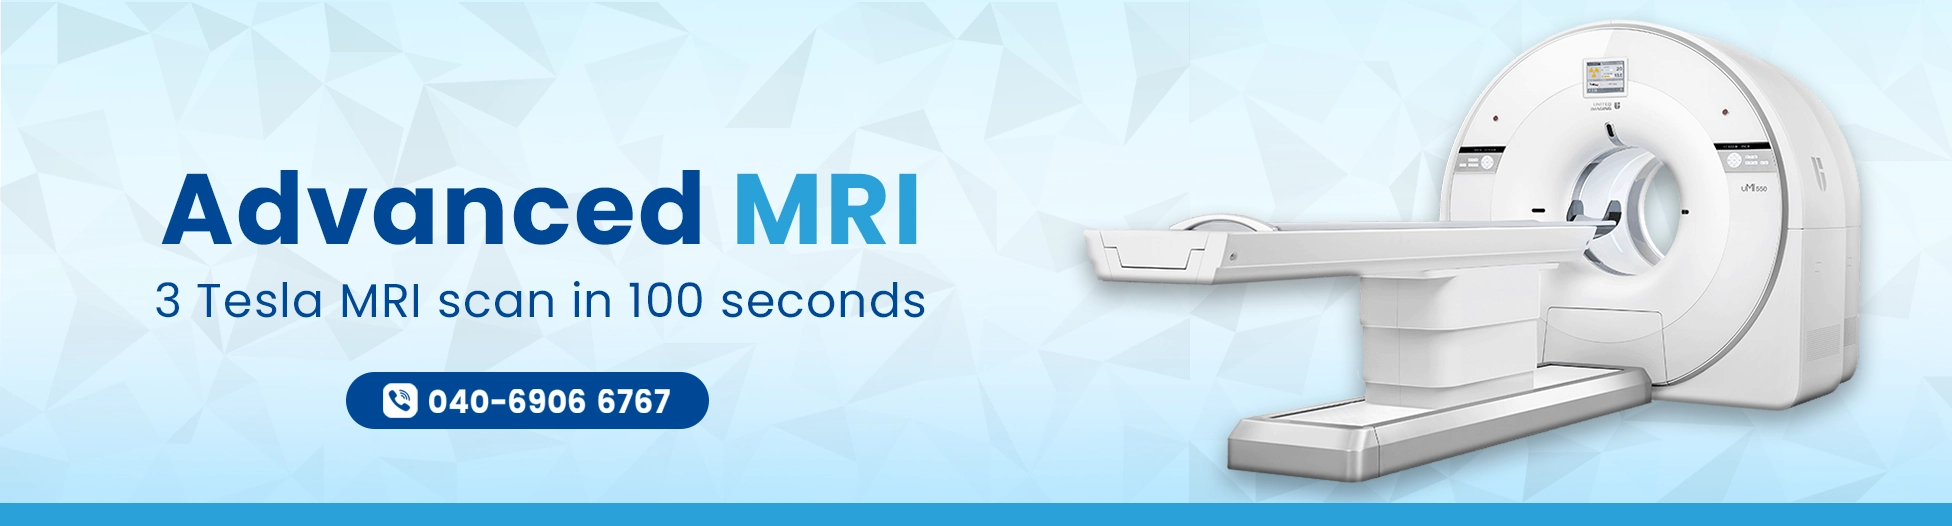 Best MRI center in Hyderabad